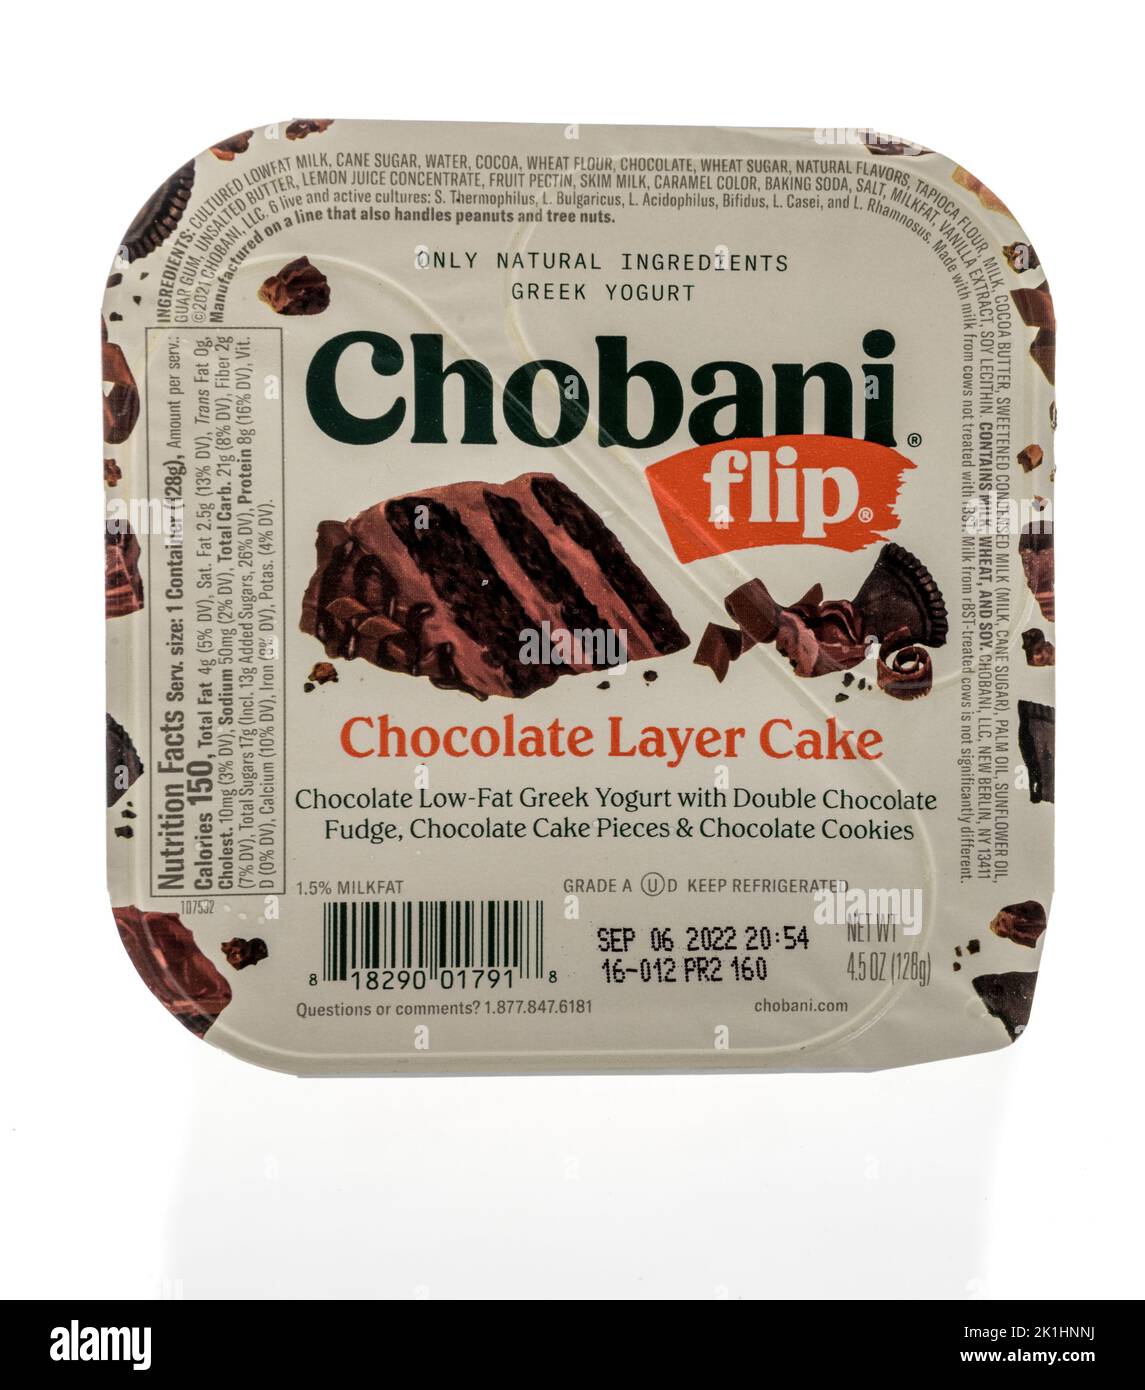 Winneconne, WI - 18 de septiembre de 2022: Un paquete de Chobani flip chocolate capa pastel de yogur griego sobre un fondo aislado. Foto de stock